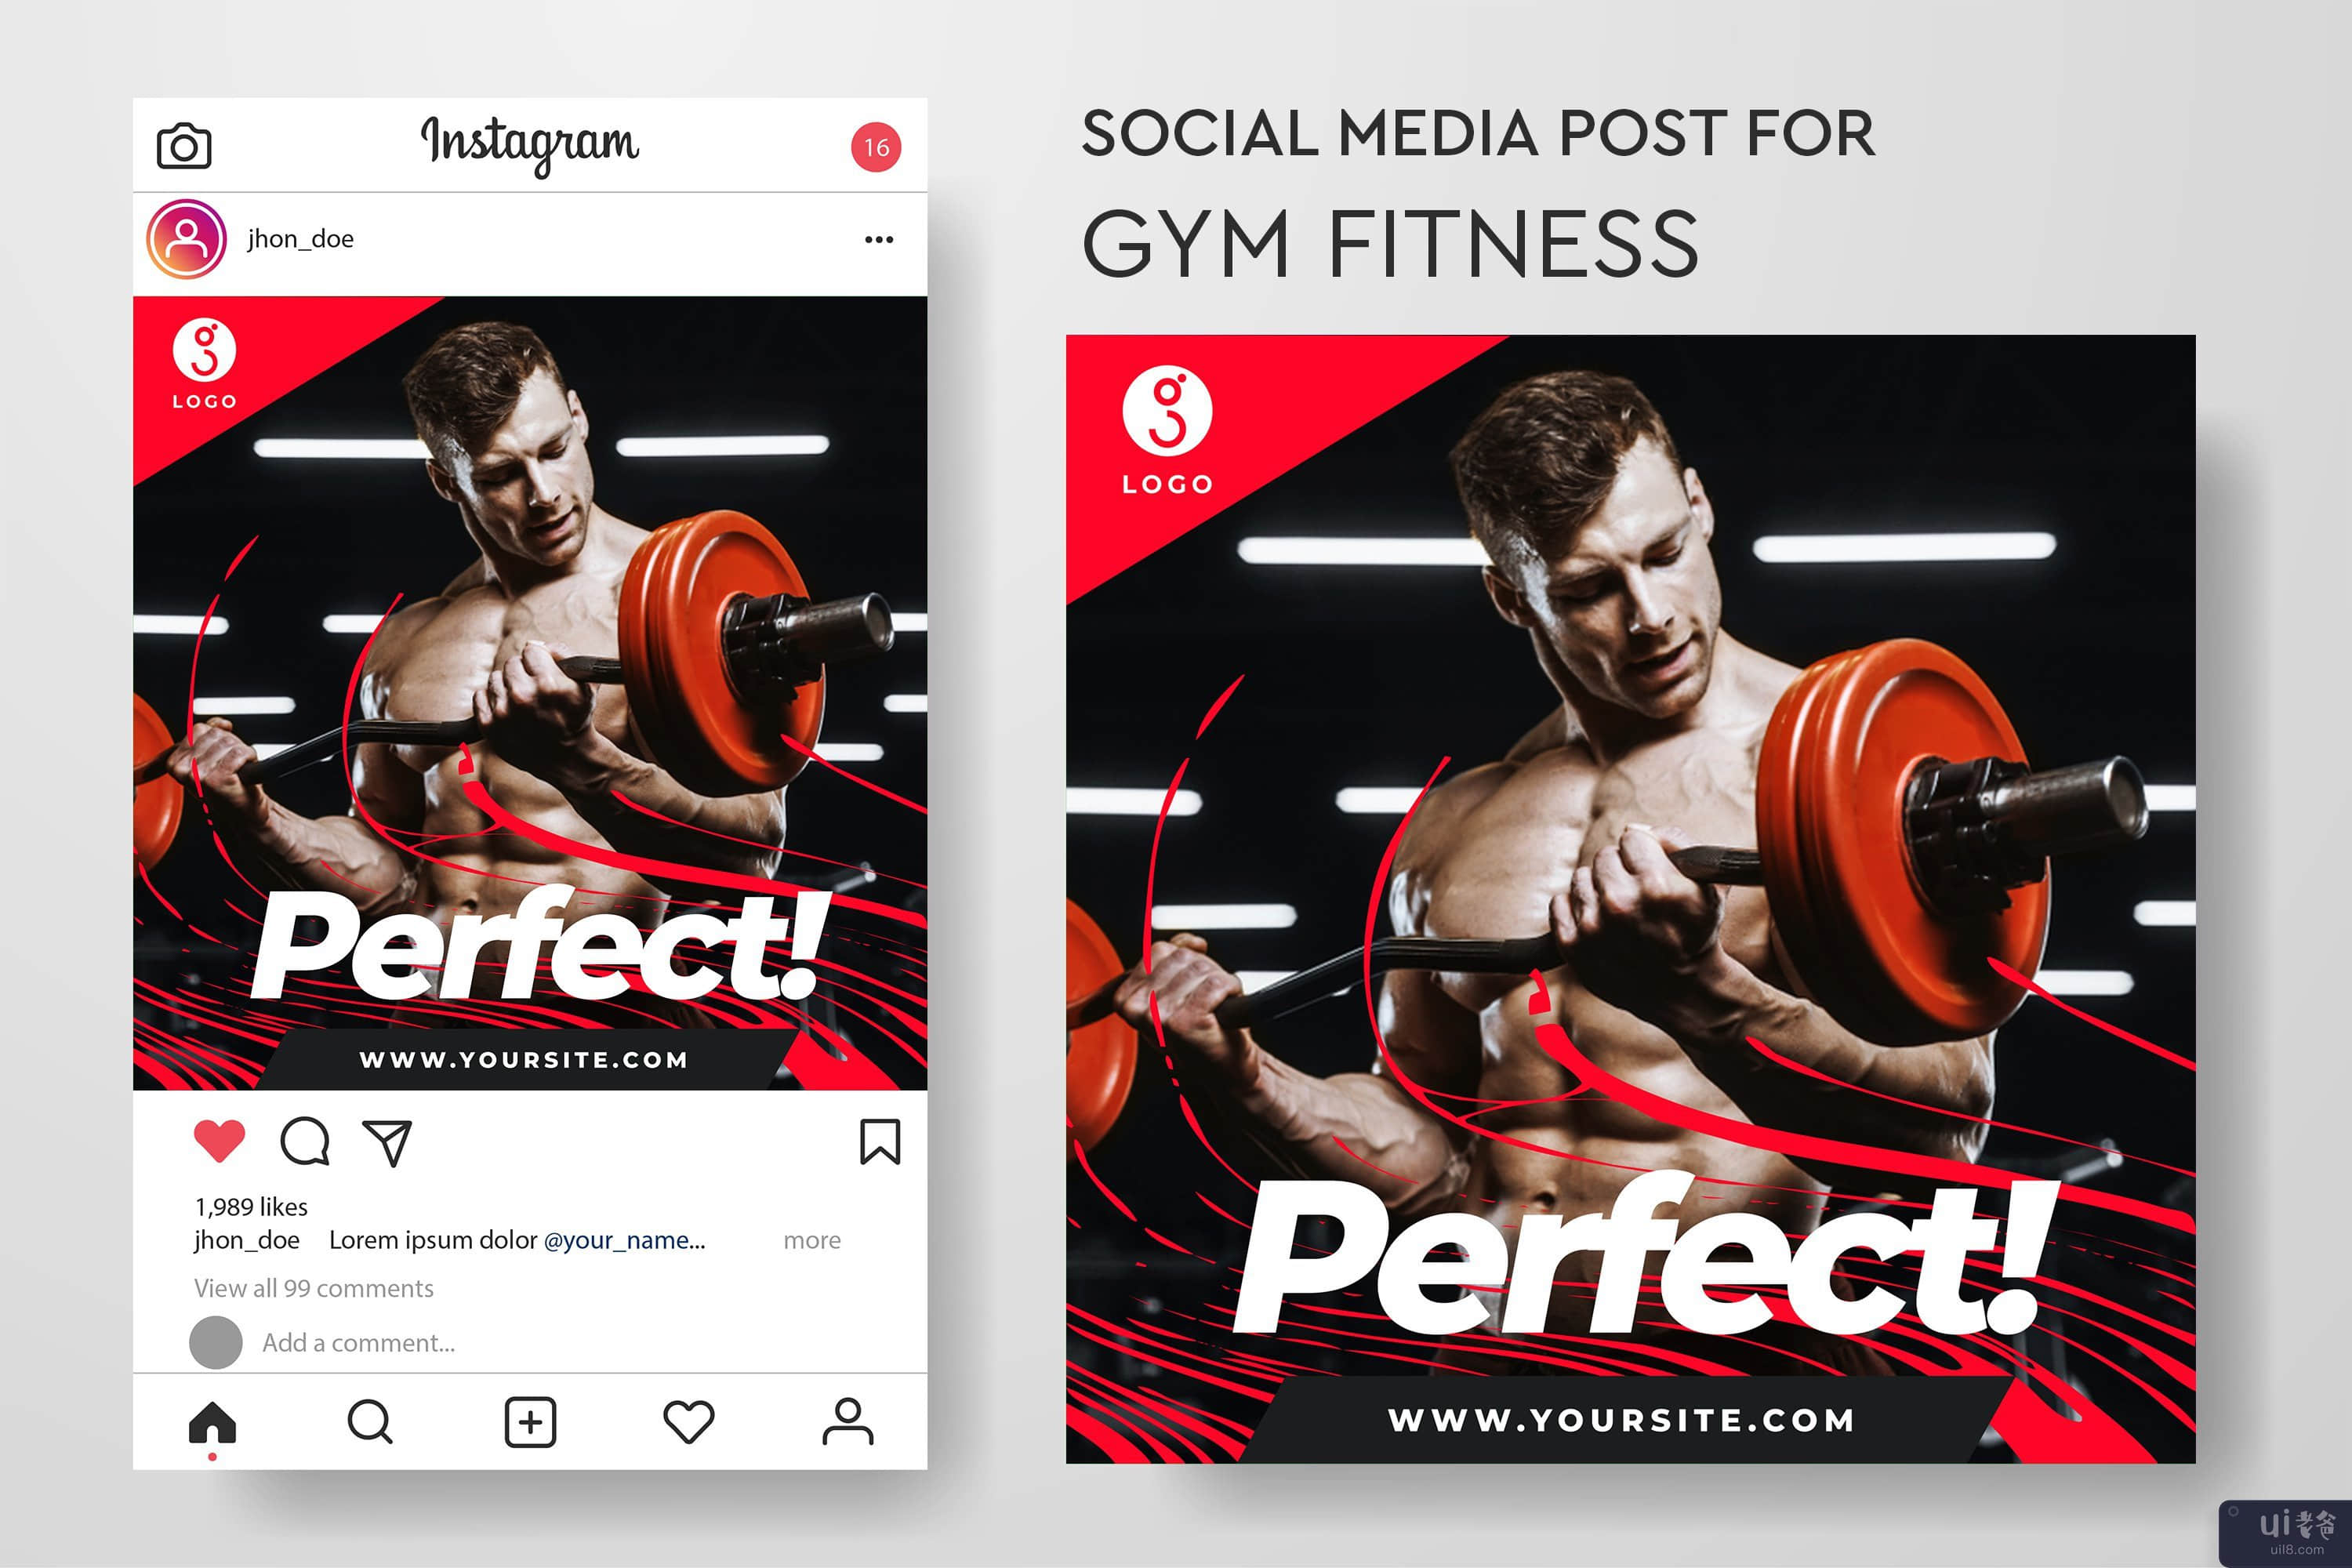 健身房健身的社交媒体帖子模板集合(Social media post template collection for gym fitness)插图